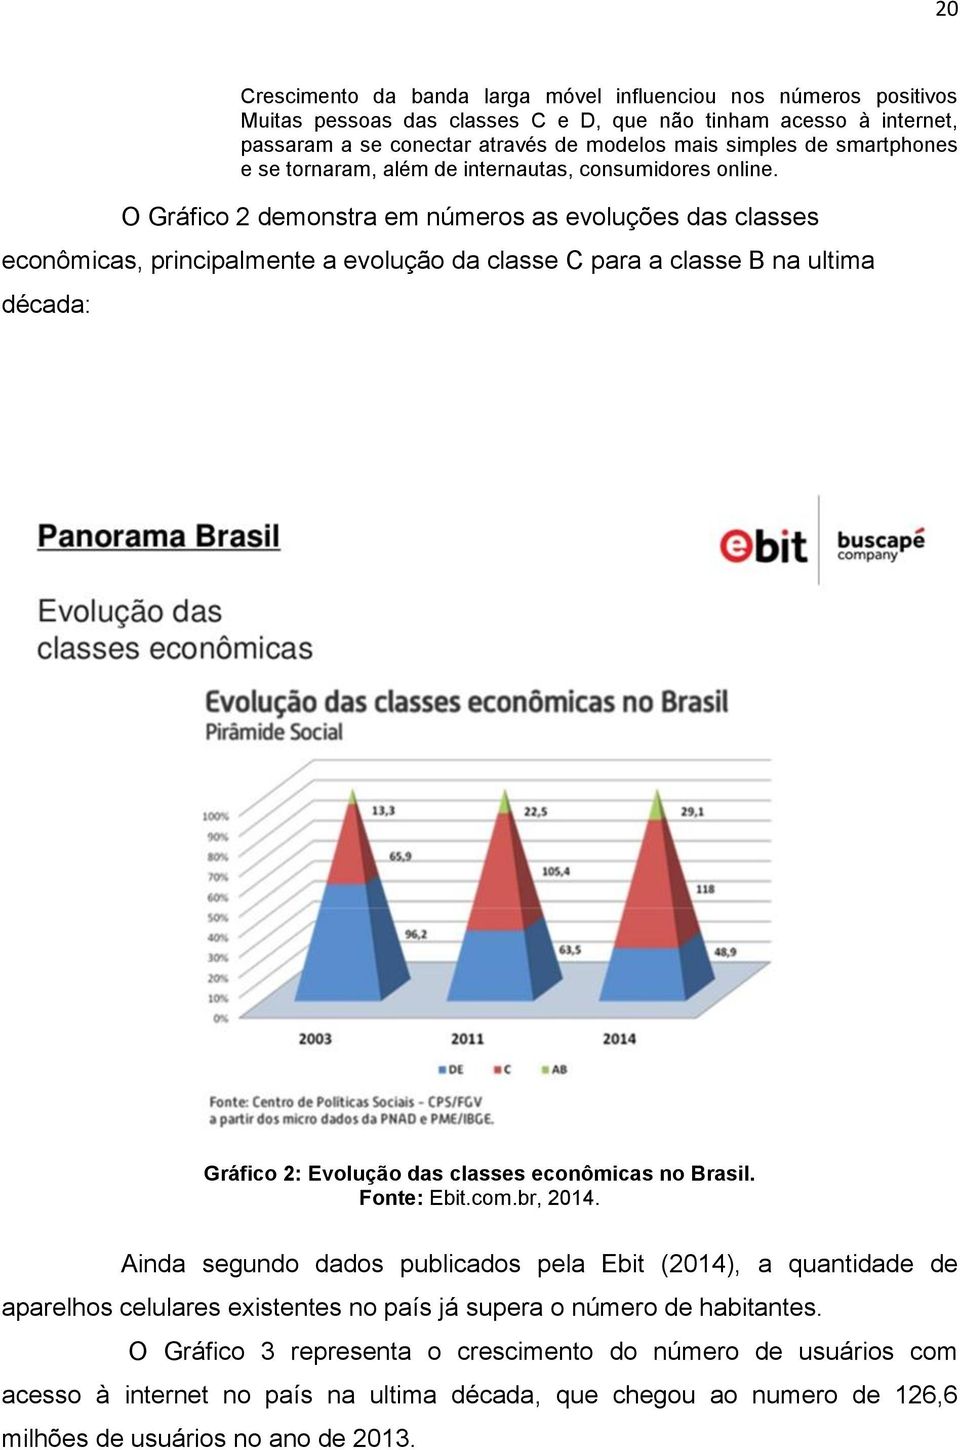 O Gráfico 2 demonstra em números as evoluções das classes econômicas, principalmente a evolução da classe C para a classe B na ultima década: Gráfico 2: Evolução das classes econômicas no Brasil.